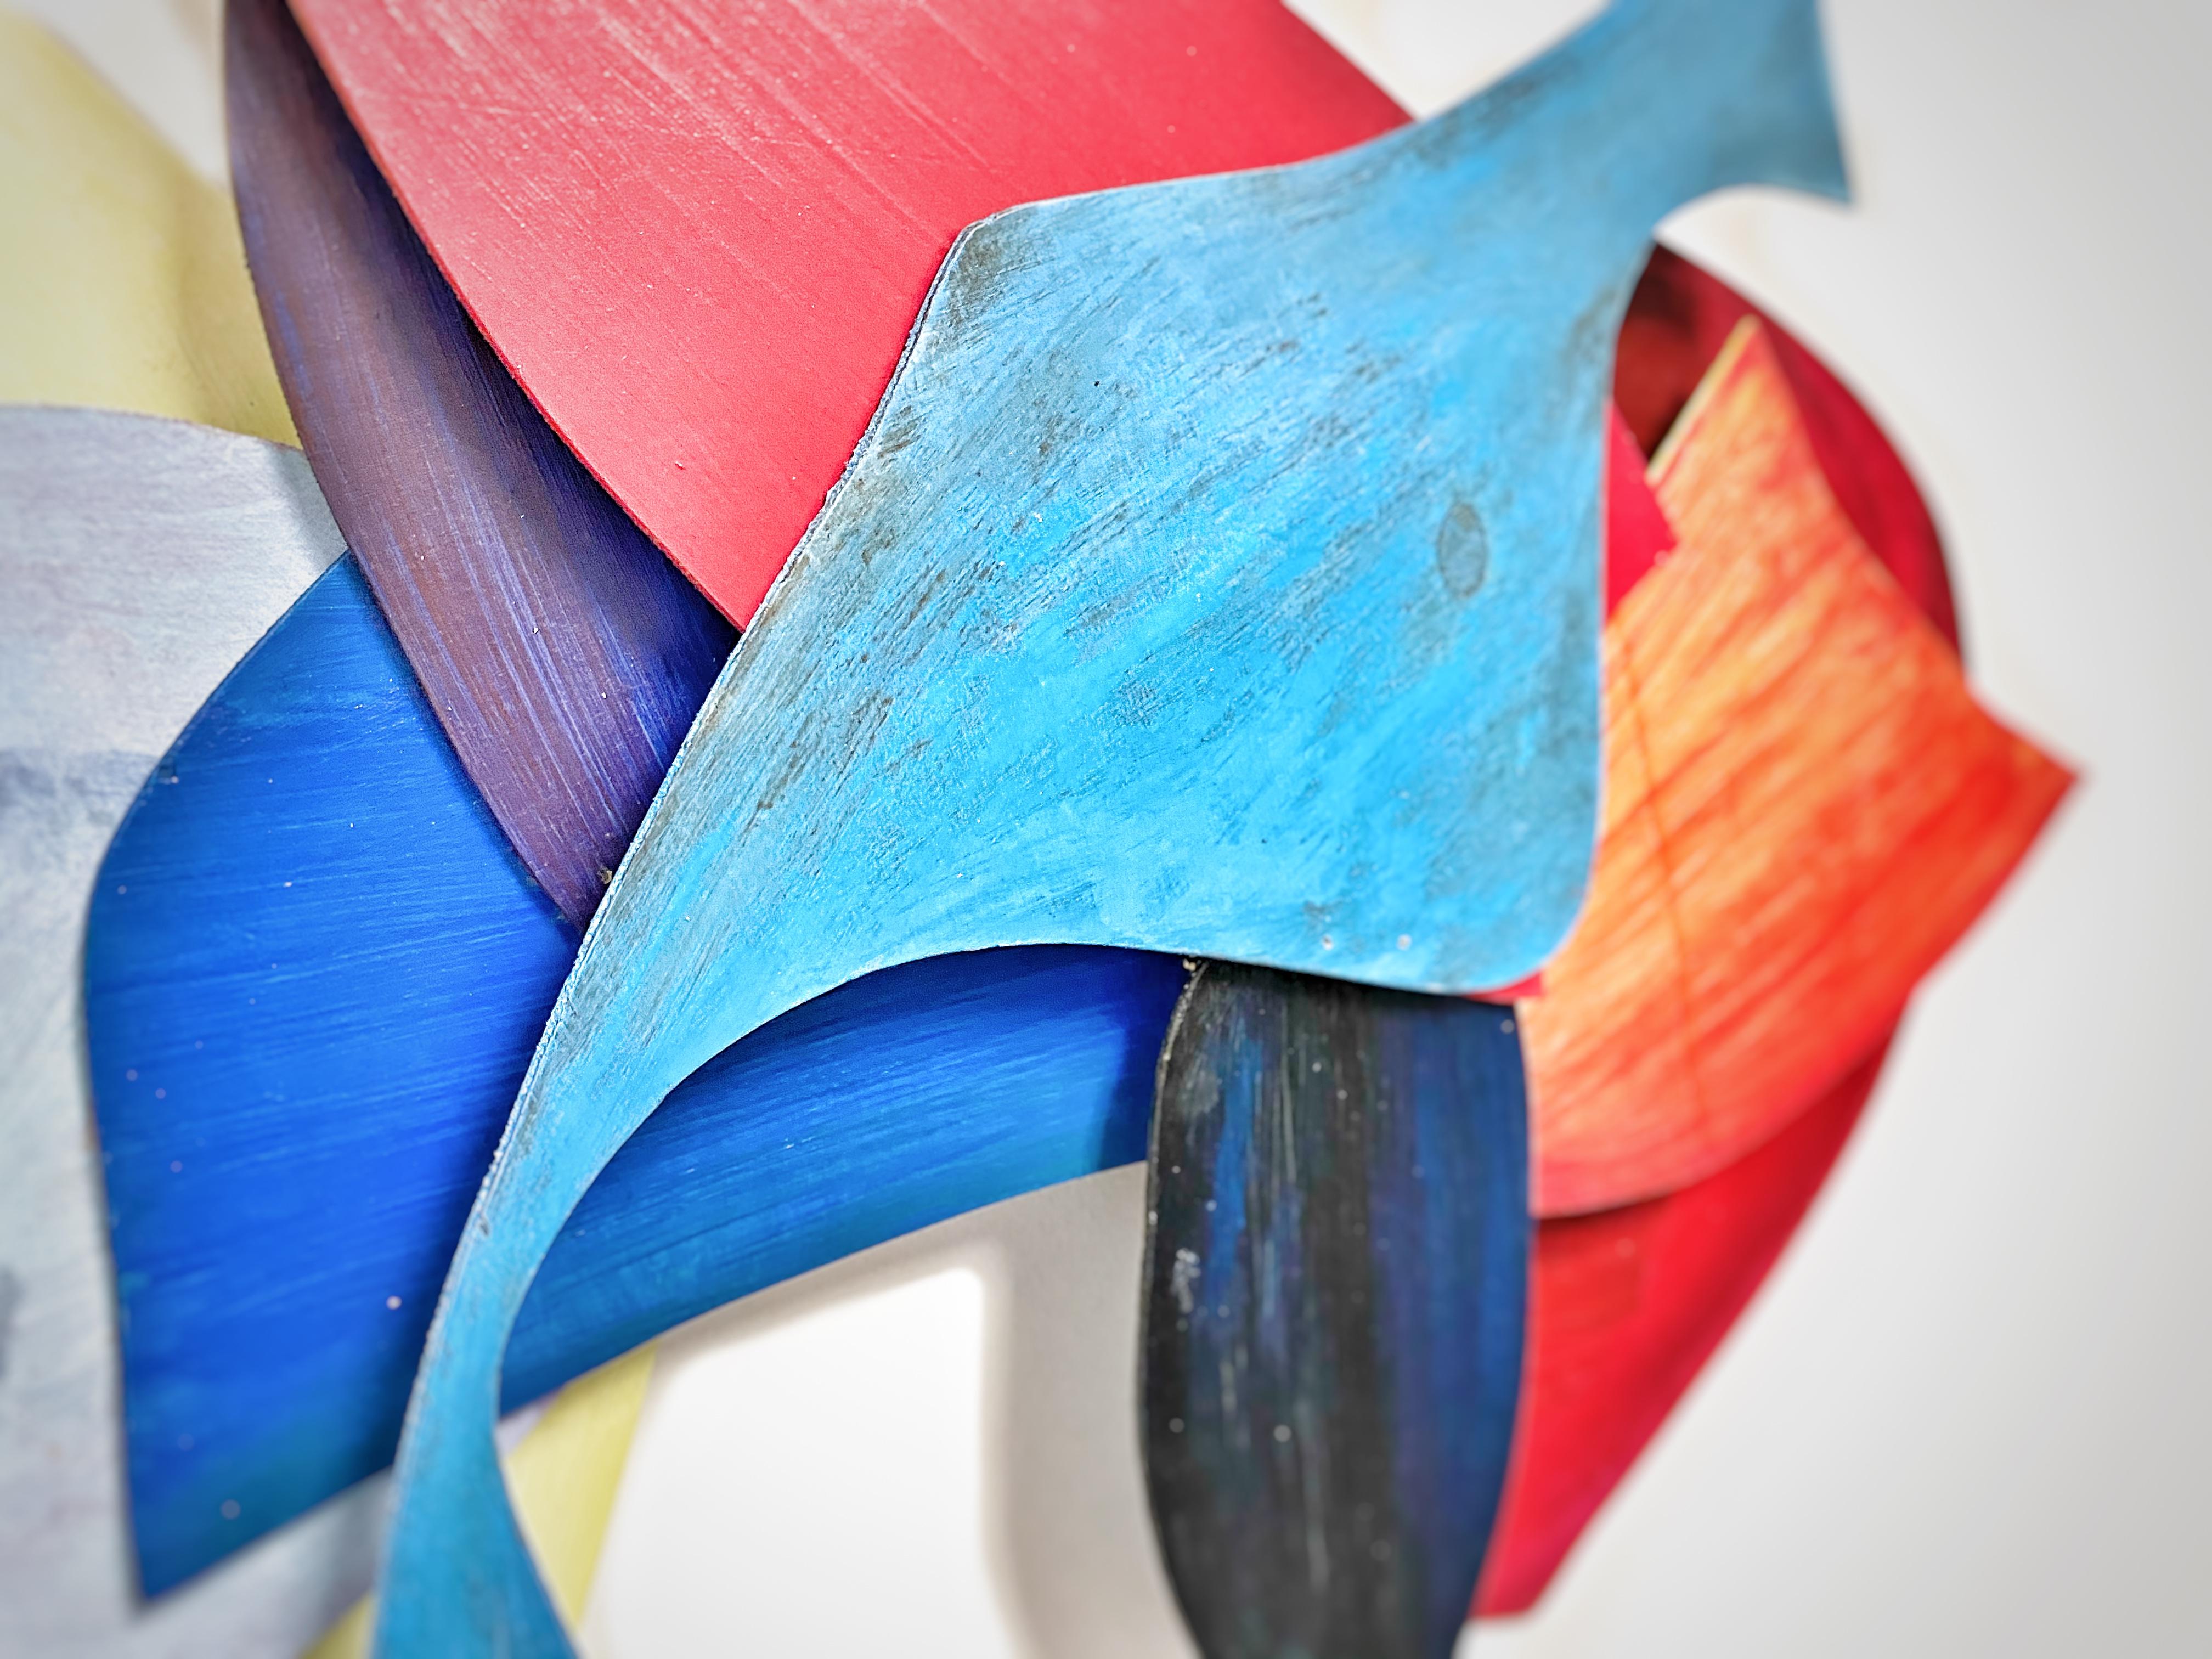 abstract 3d sculpture